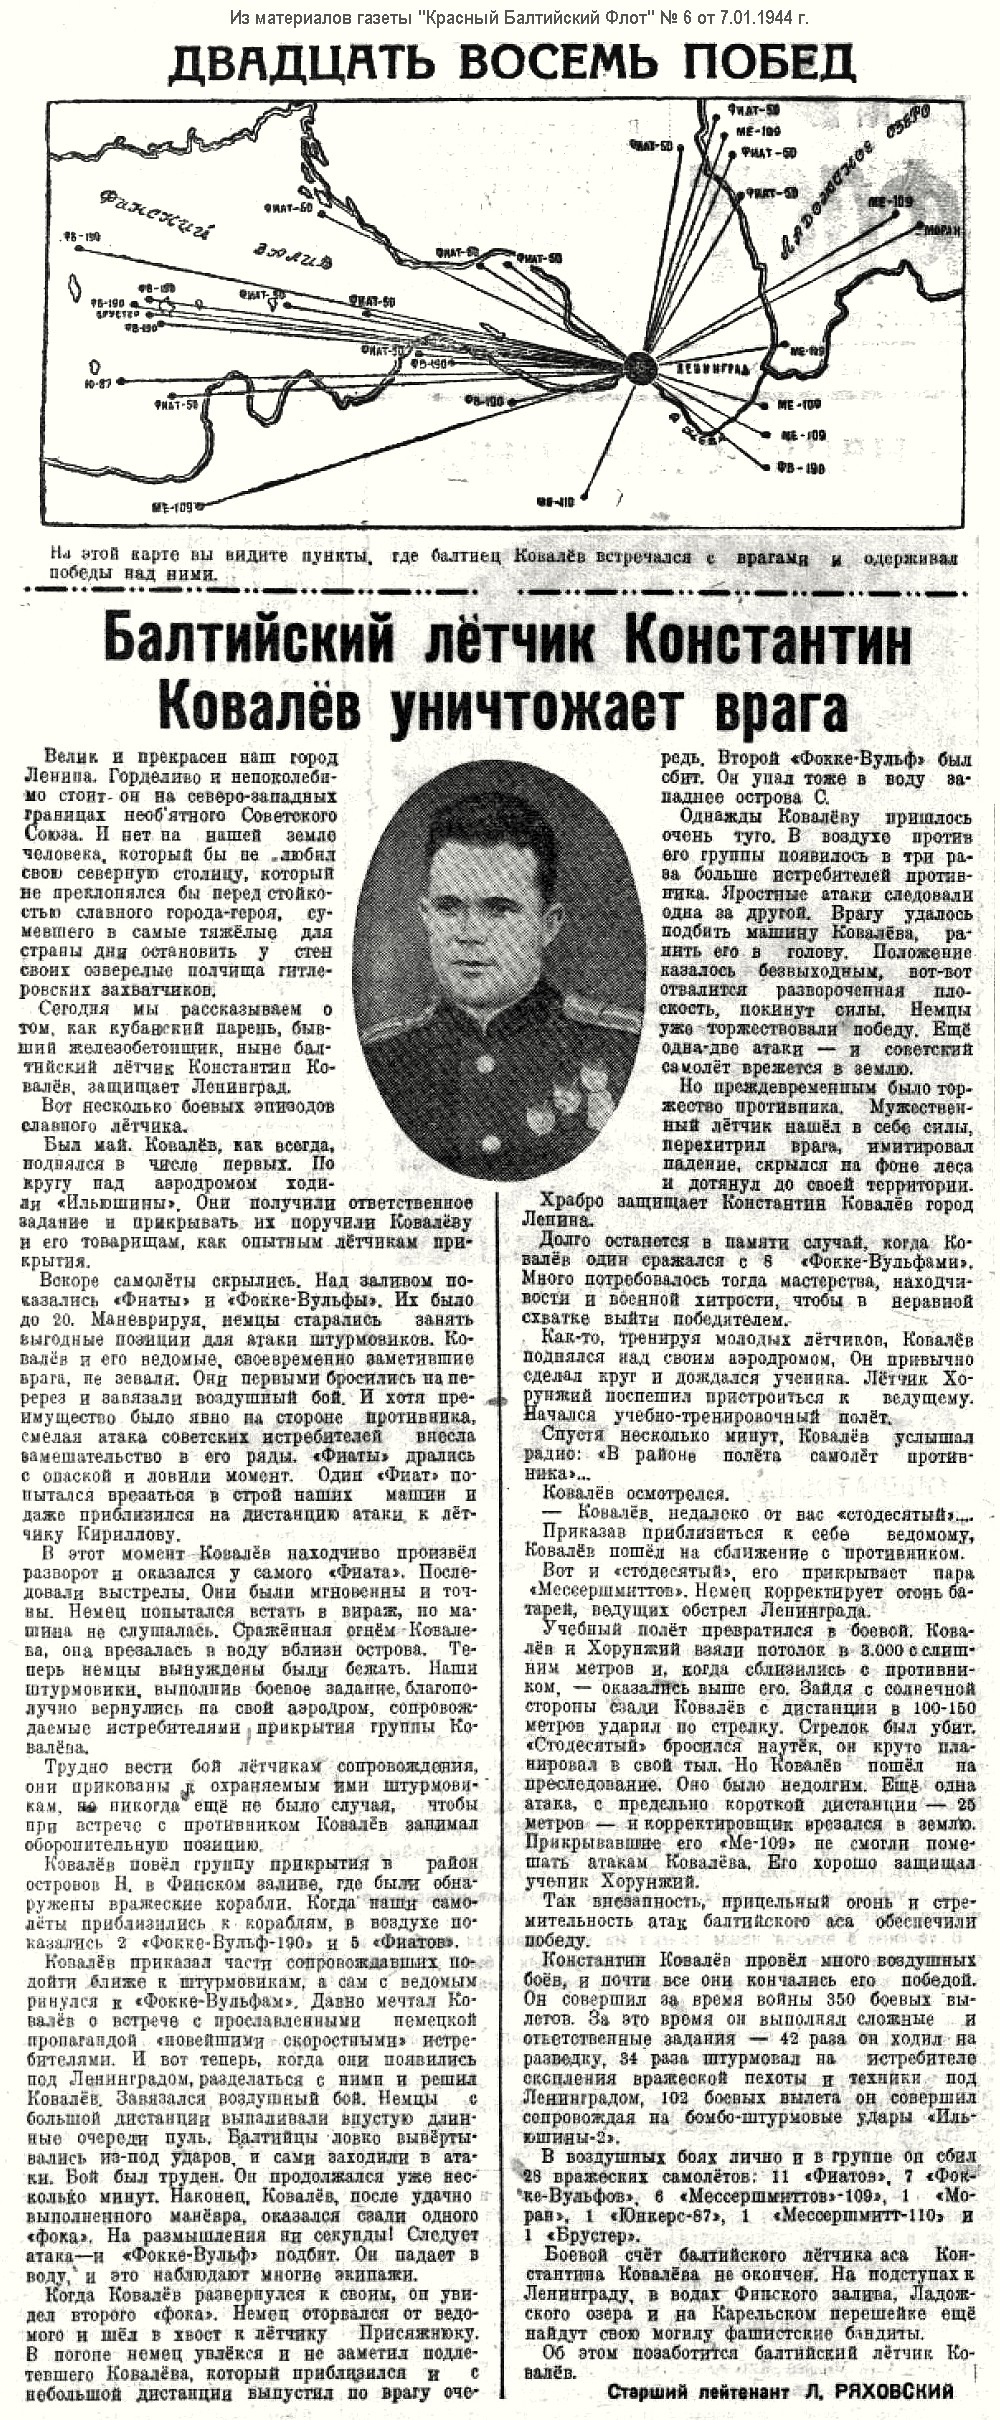 Из материалов военных лет о Ковалёве Константине Федотовиче